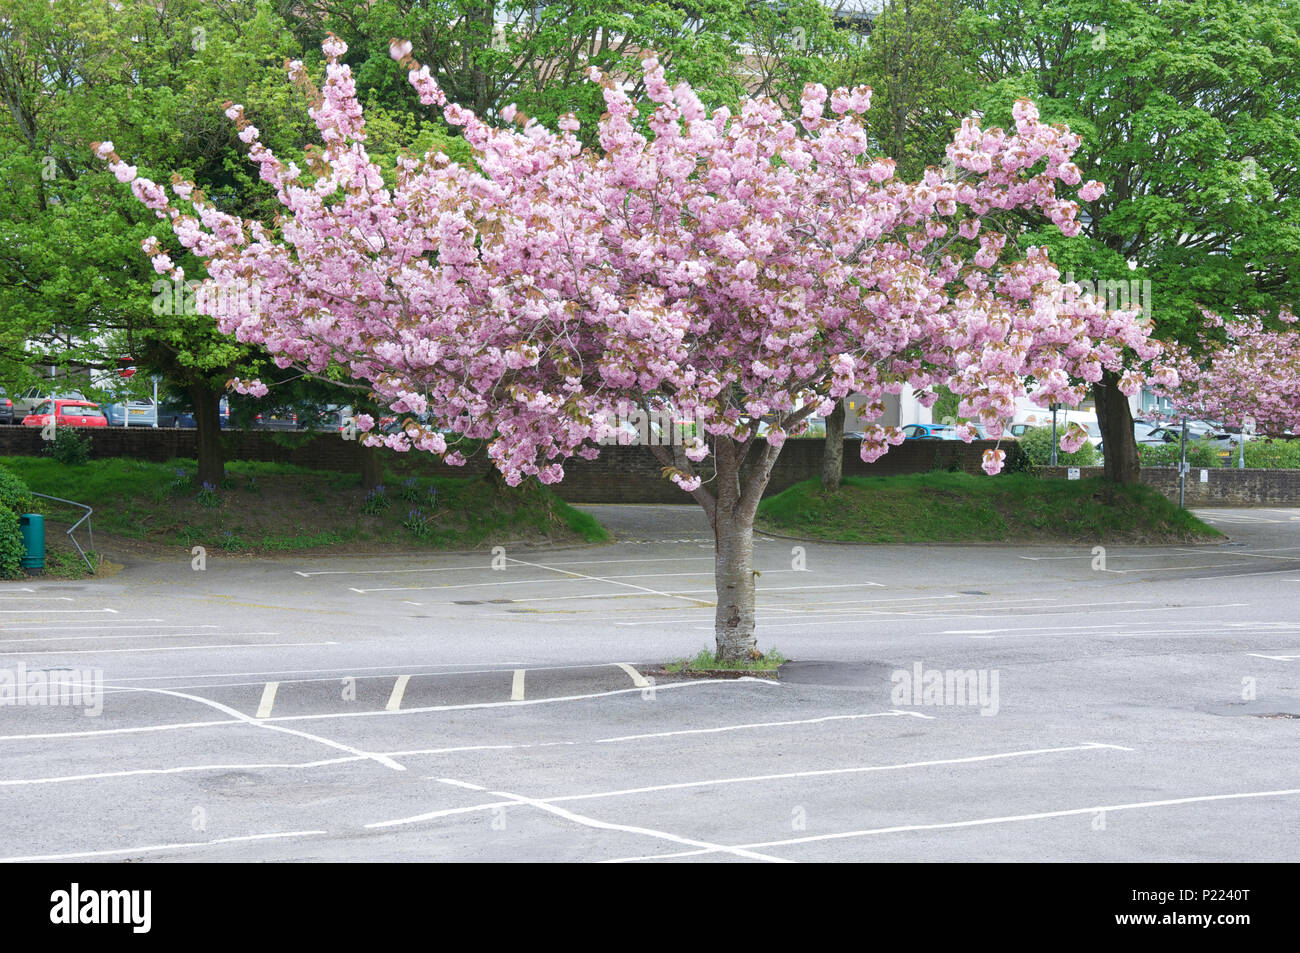 Ciliegio ornamentale Blossom Tree di bloom, crescendo in un ambiente urbano parcheggio auto. Questi decorativi alberi di ombra sono tolleranti di inquinamento atmosferico. Inghilterra, Regno Unito Foto Stock